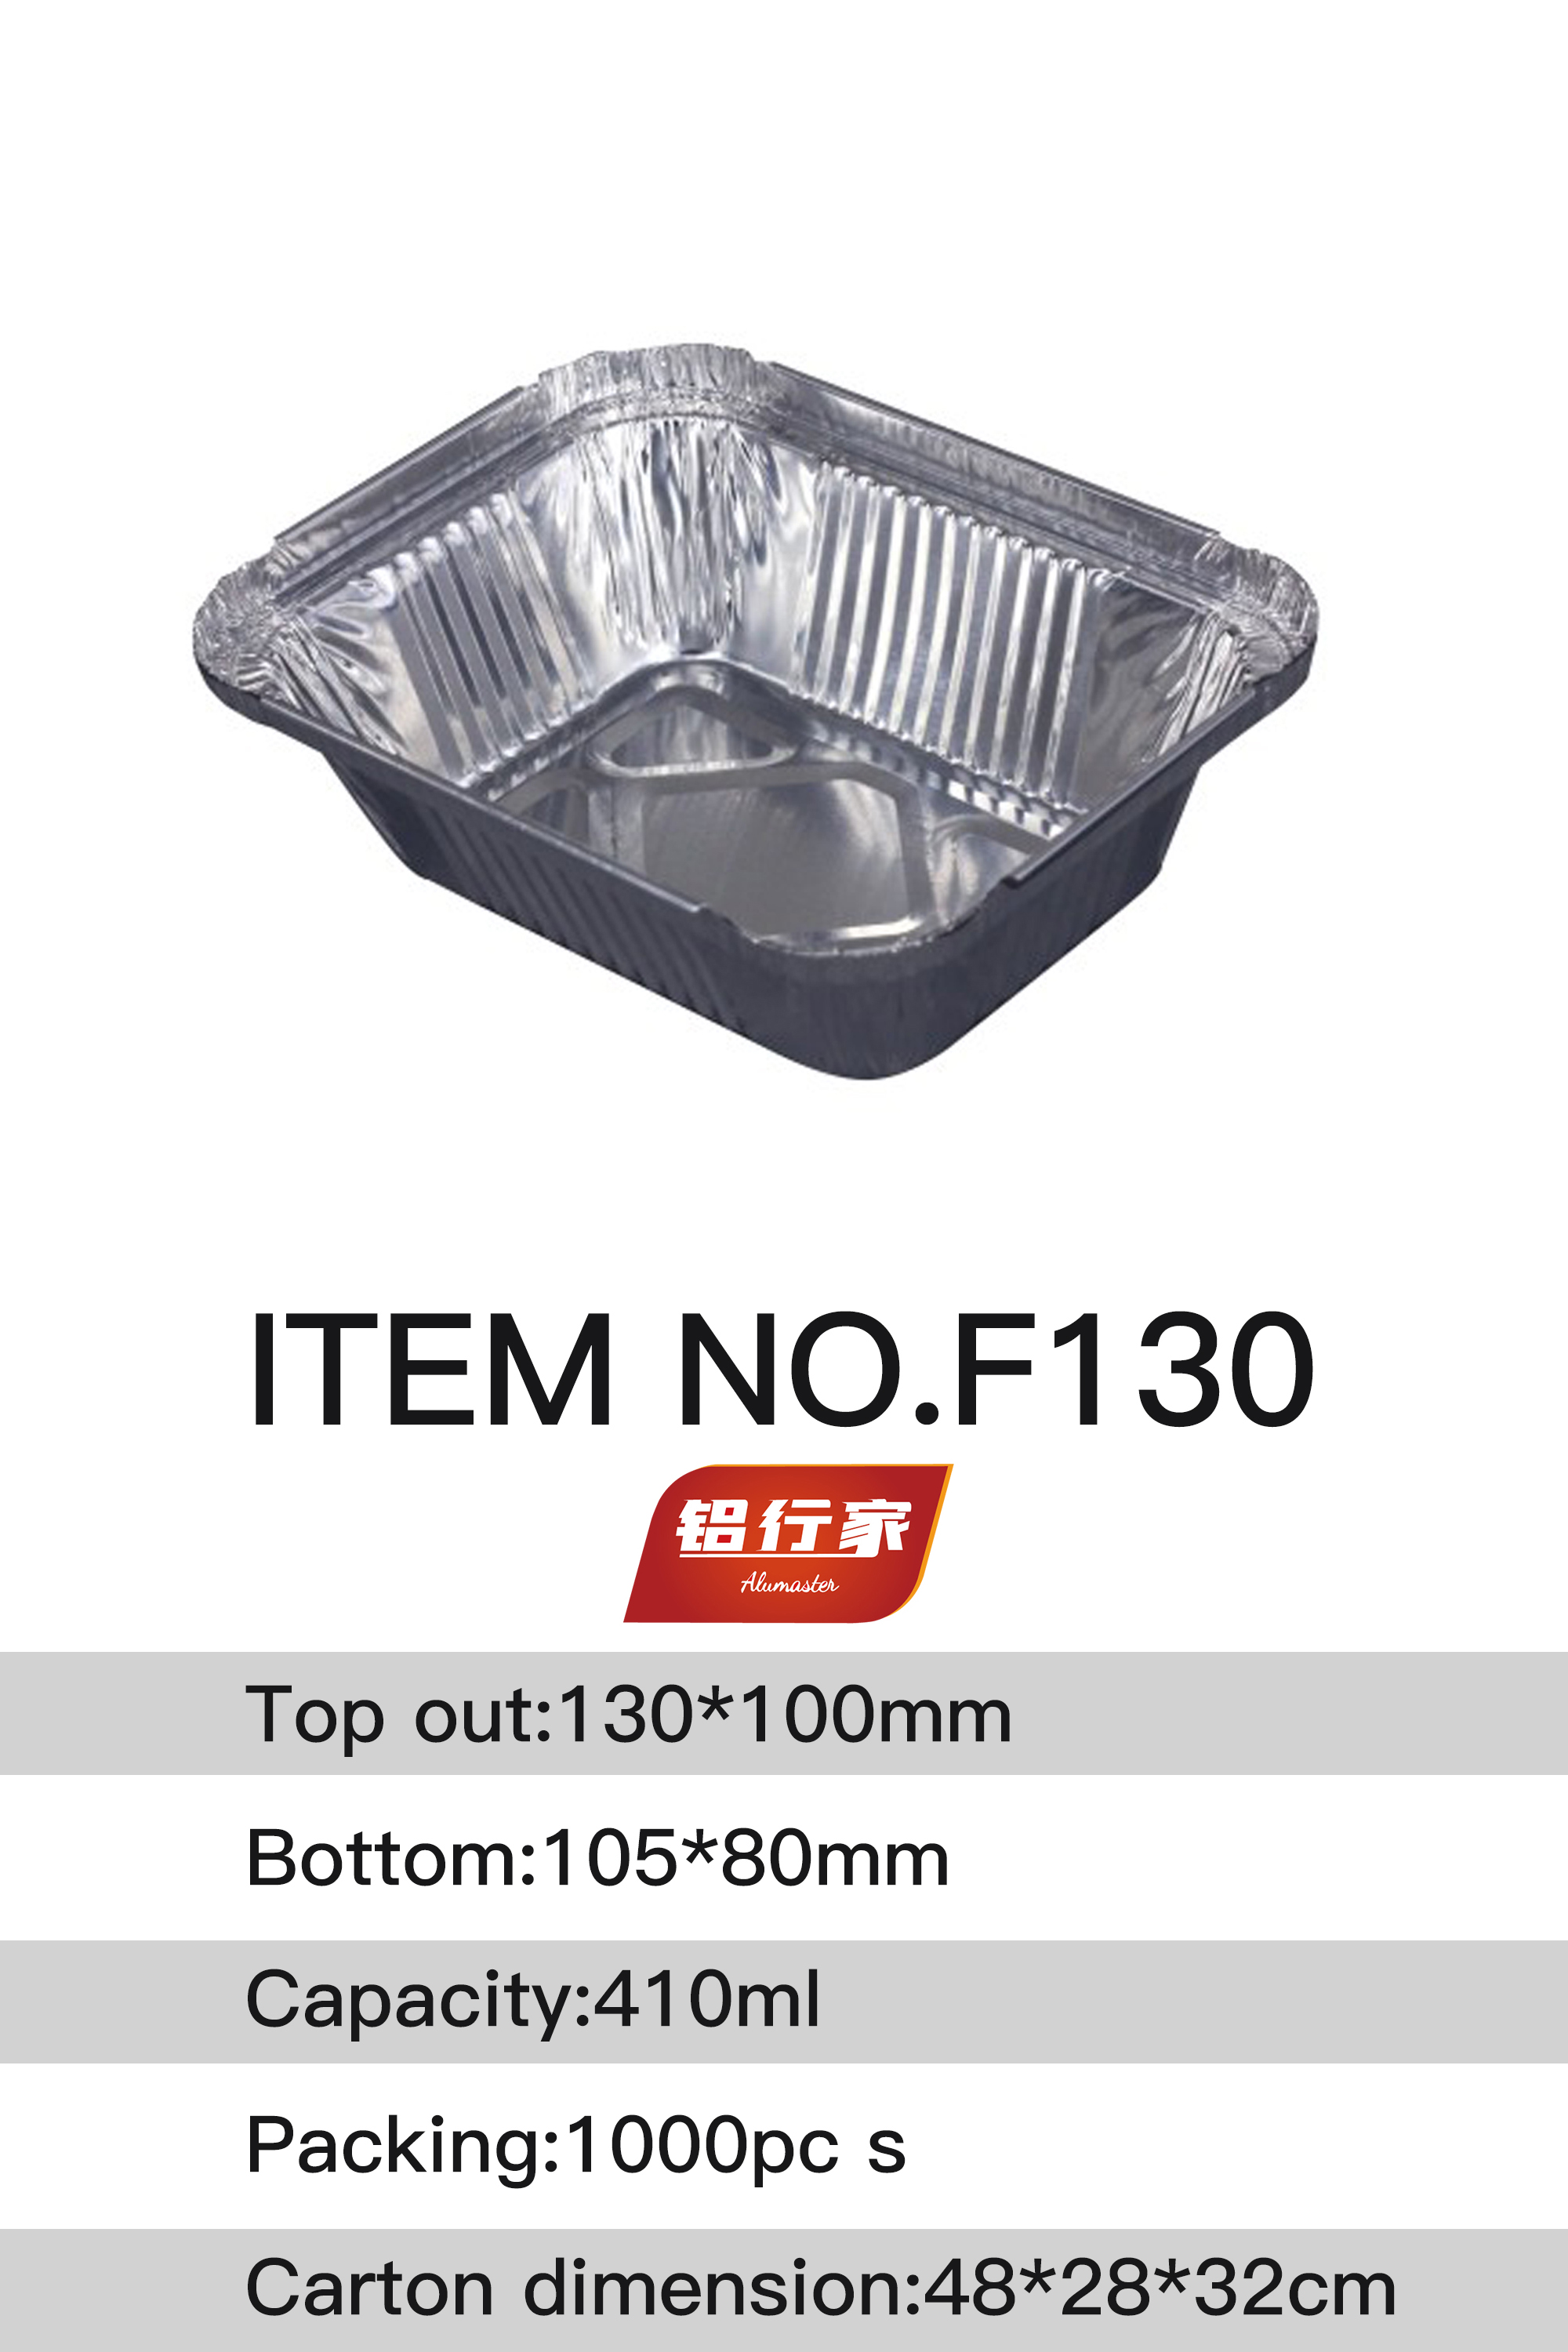 铝行家铝箔餐盒F130/410